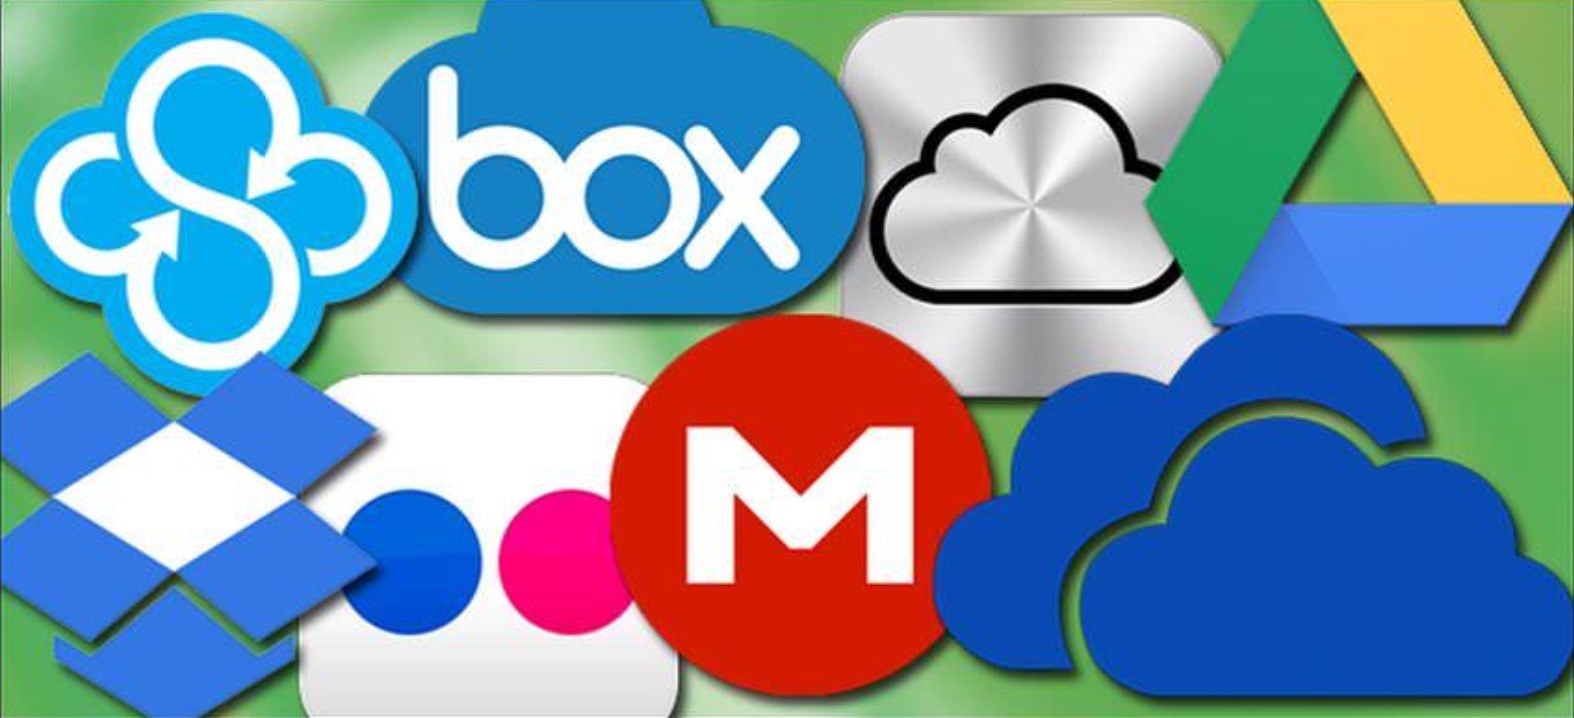 Một số dịch vụ lưu trữ đám mây nổi bật hiện nay